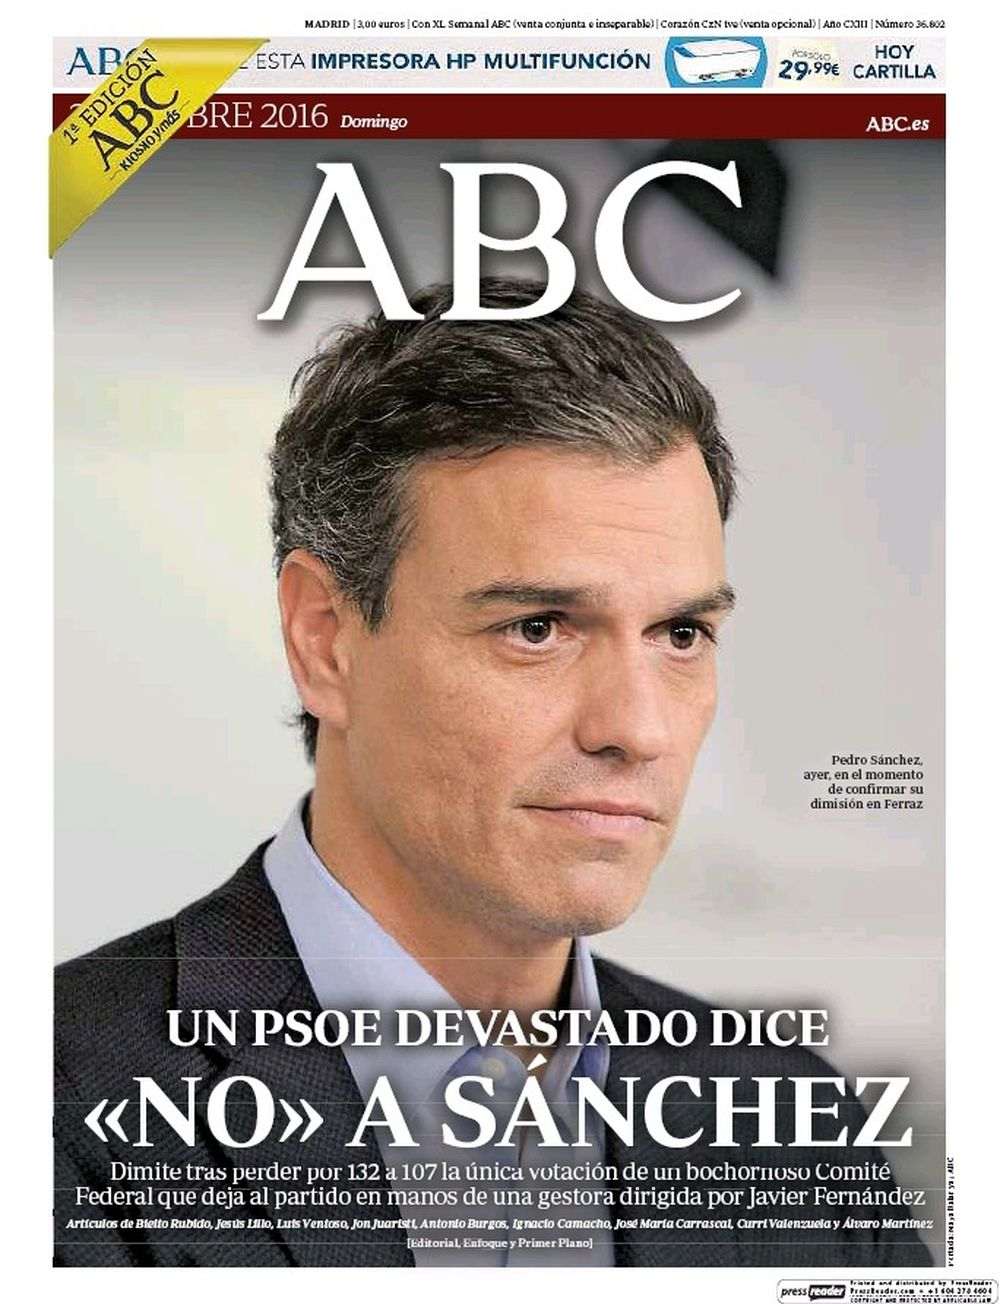 La premsa espanyola destaca la dimissió de Sánchez i la ruptura del PSOE